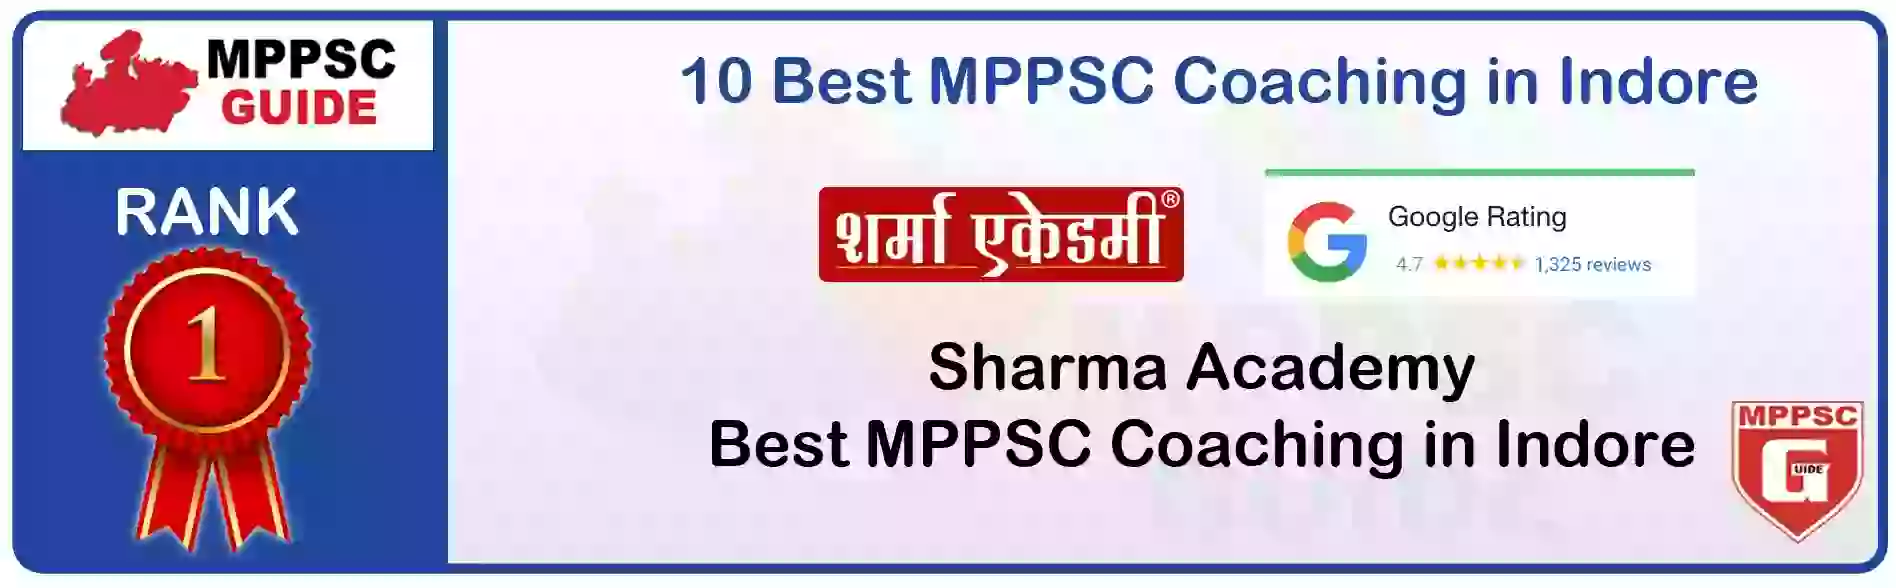 MPPSC Coaching in Shajapur, MPPSC Coaching Institute In Shajapur, Best MPPSC Coaching in Shajapur, Top 10 MPPSC Coaching In Shajapur, best mppsc coaching institute in shajapur, MPPSC Coaching Classes In Shajapur, MPPSC Online Coaching In Shajapur, mppsc coaching in Shajapur bhanwarkua